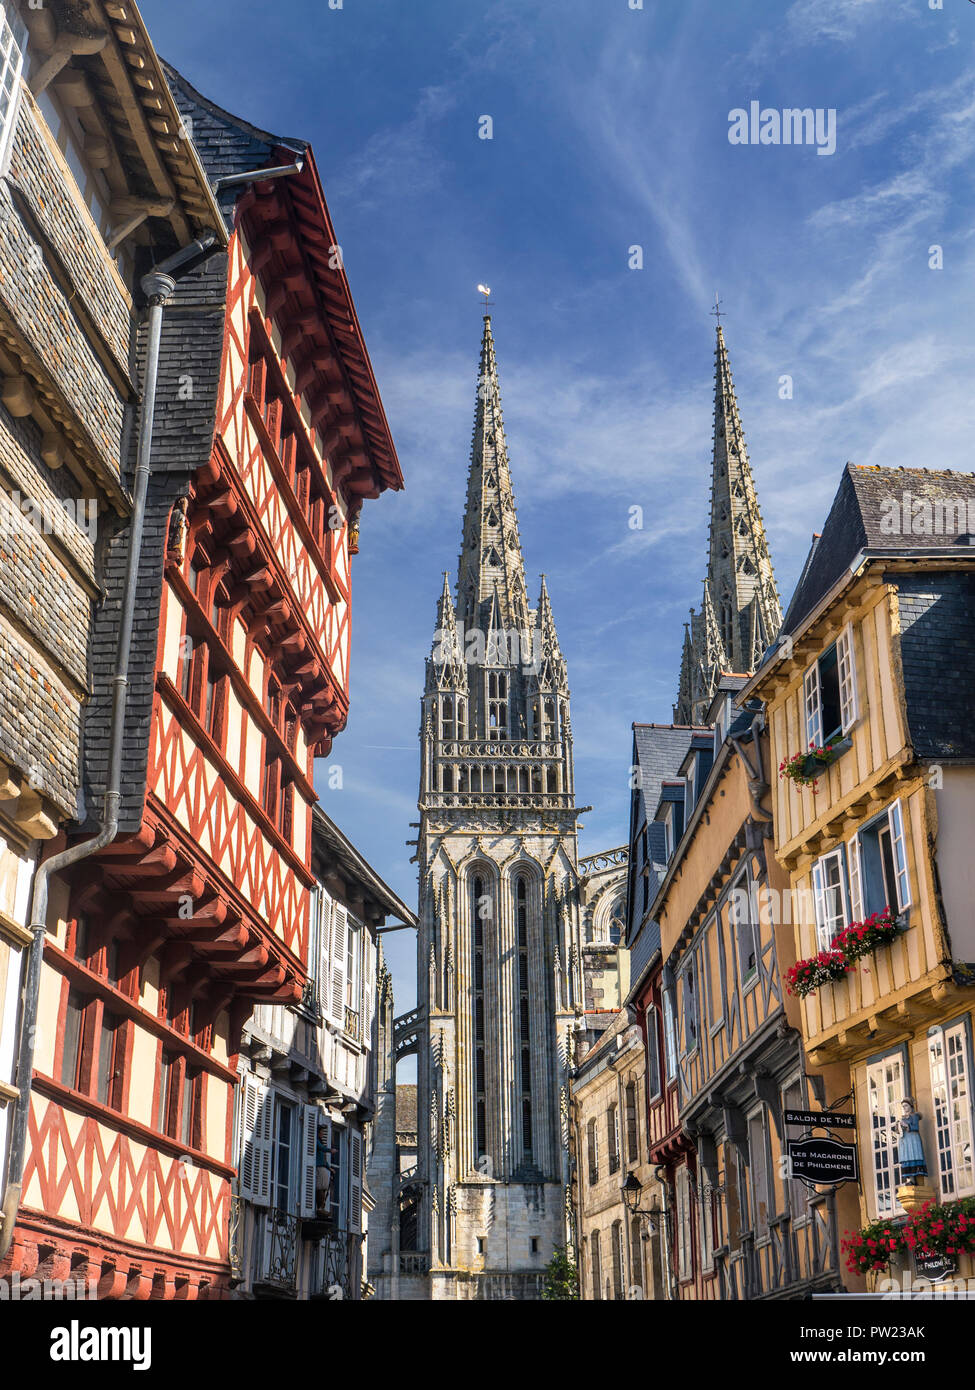 Quimper Bretaña con entramados de madera medieval casco histórico barrio comercial chapitel de la Catedral en el fondo Quimper Bretagne Bretagne Finisterre Francia Foto de stock